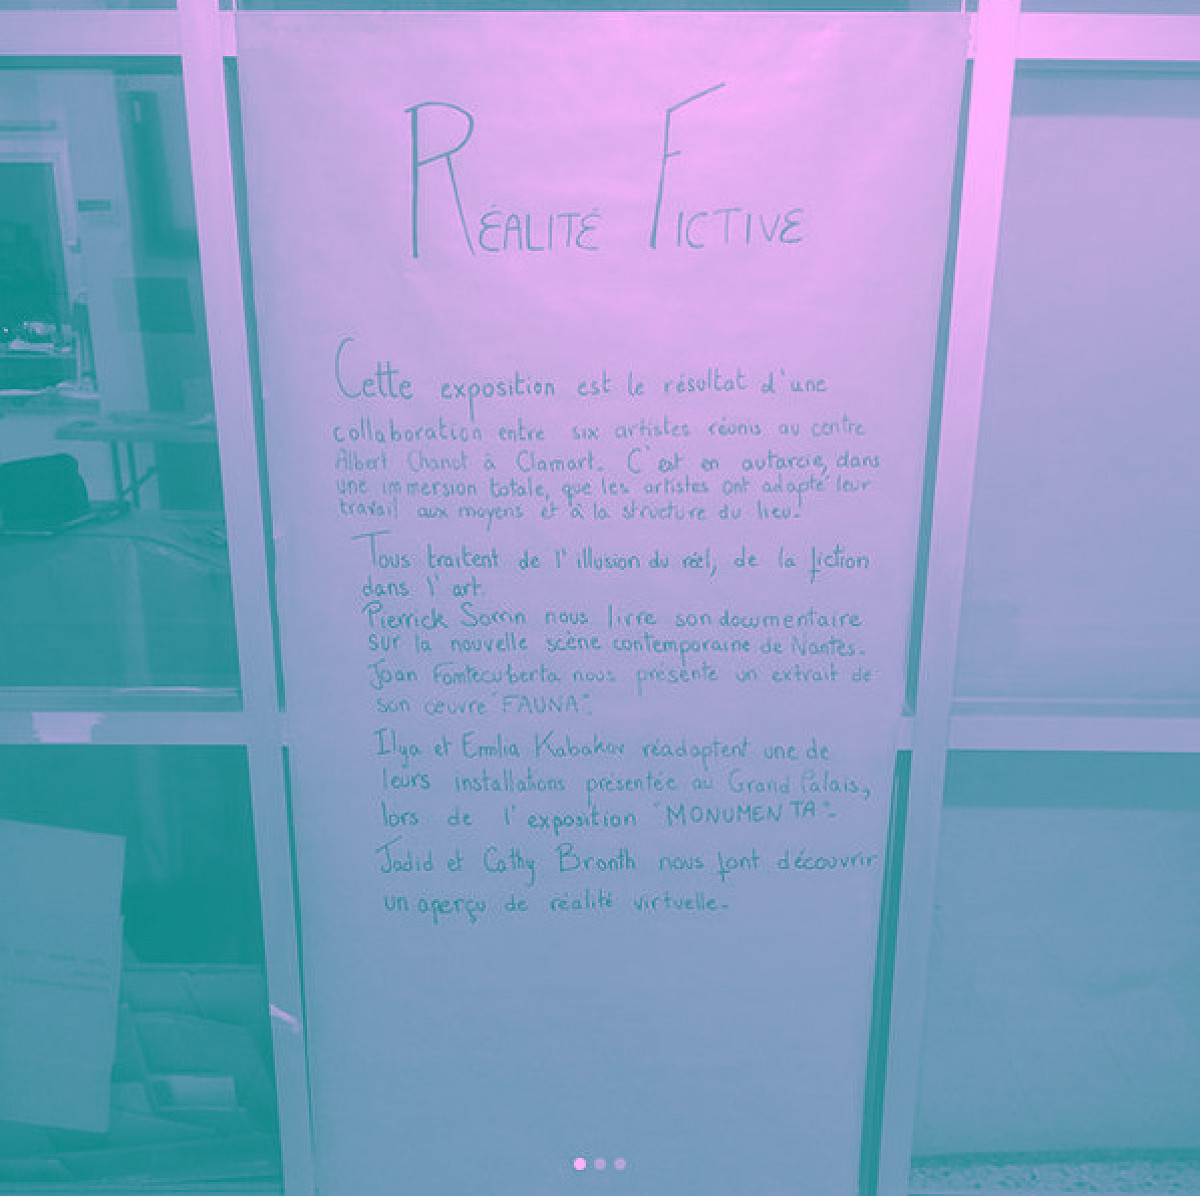 Texte de présentation sur une porte, réalité fictive, note d'intention d'une exposition